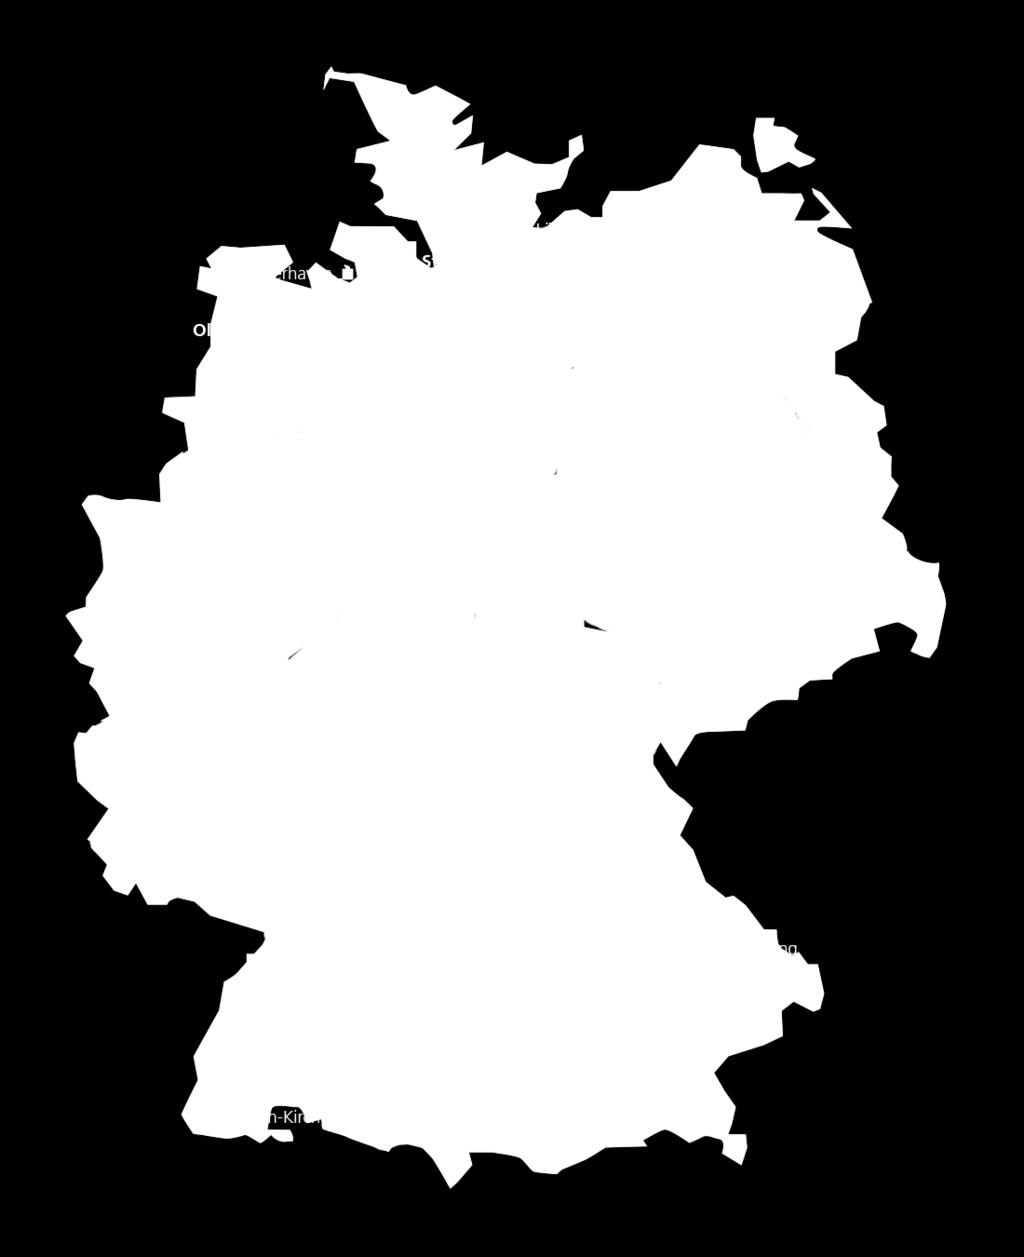 The Fraunhofer-Gesellschaft Fraunhofer-Gesellschaft Fraunhofer IFAM Founded in 1949 69 institutes 24,500 employees R&D volume 2.